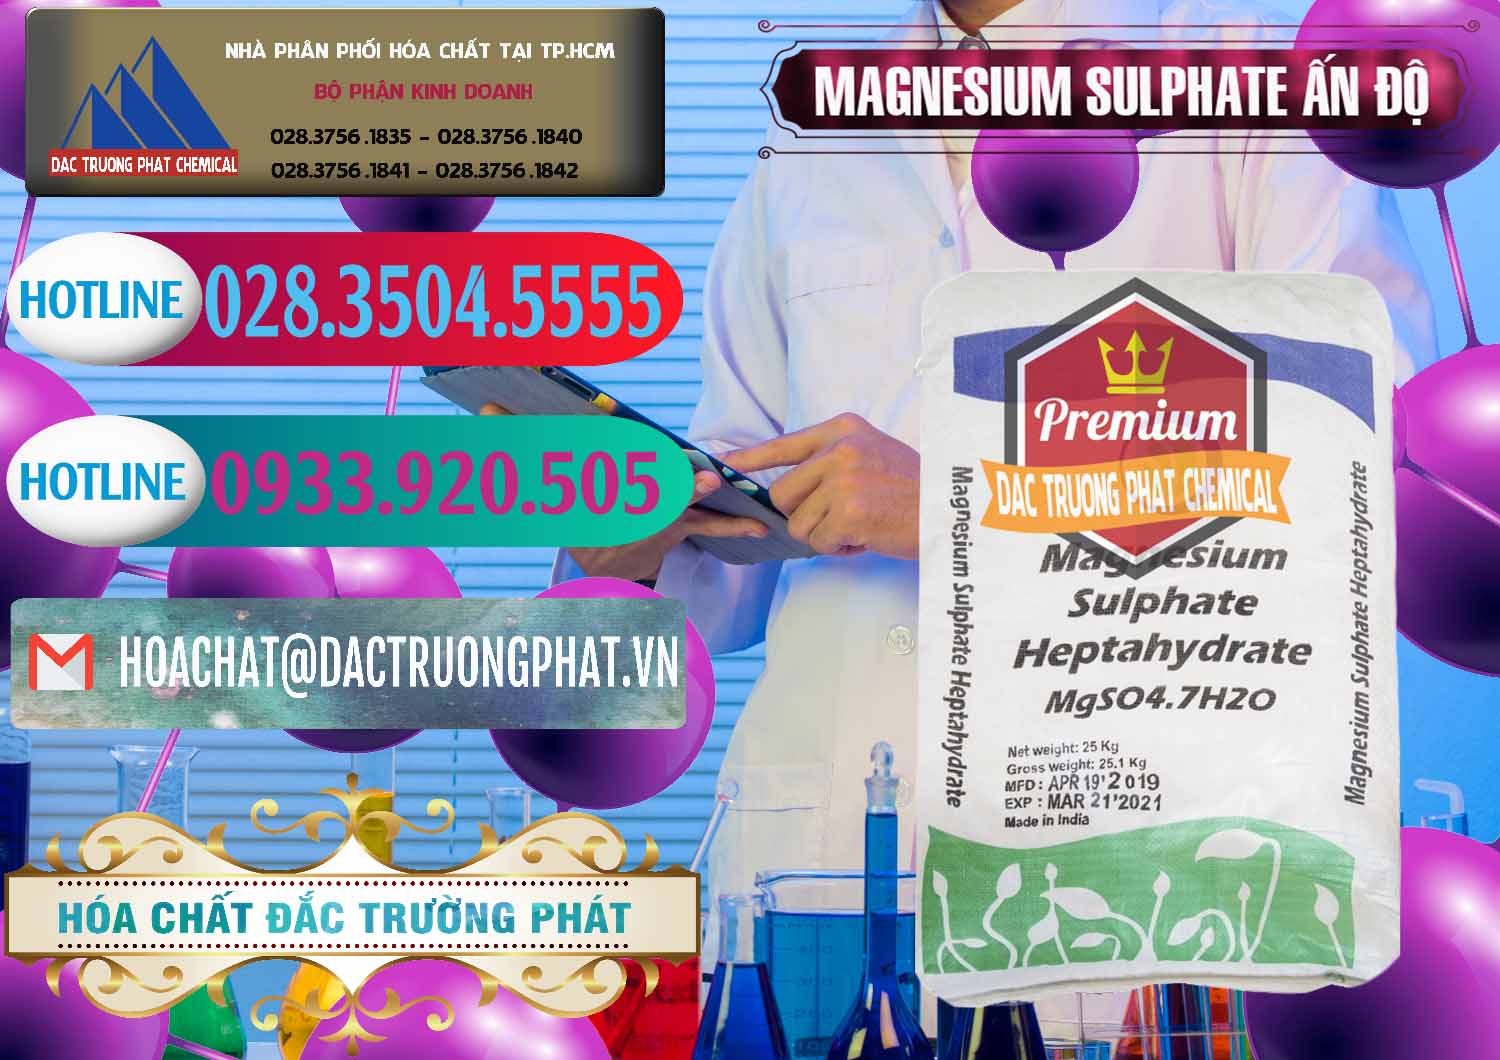 Cung cấp _ bán MGSO4.7H2O – Magnesium Sulphate Heptahydrate Ấn Độ India - 0362 - Nơi chuyên bán & cung cấp hóa chất tại TP.HCM - truongphat.vn